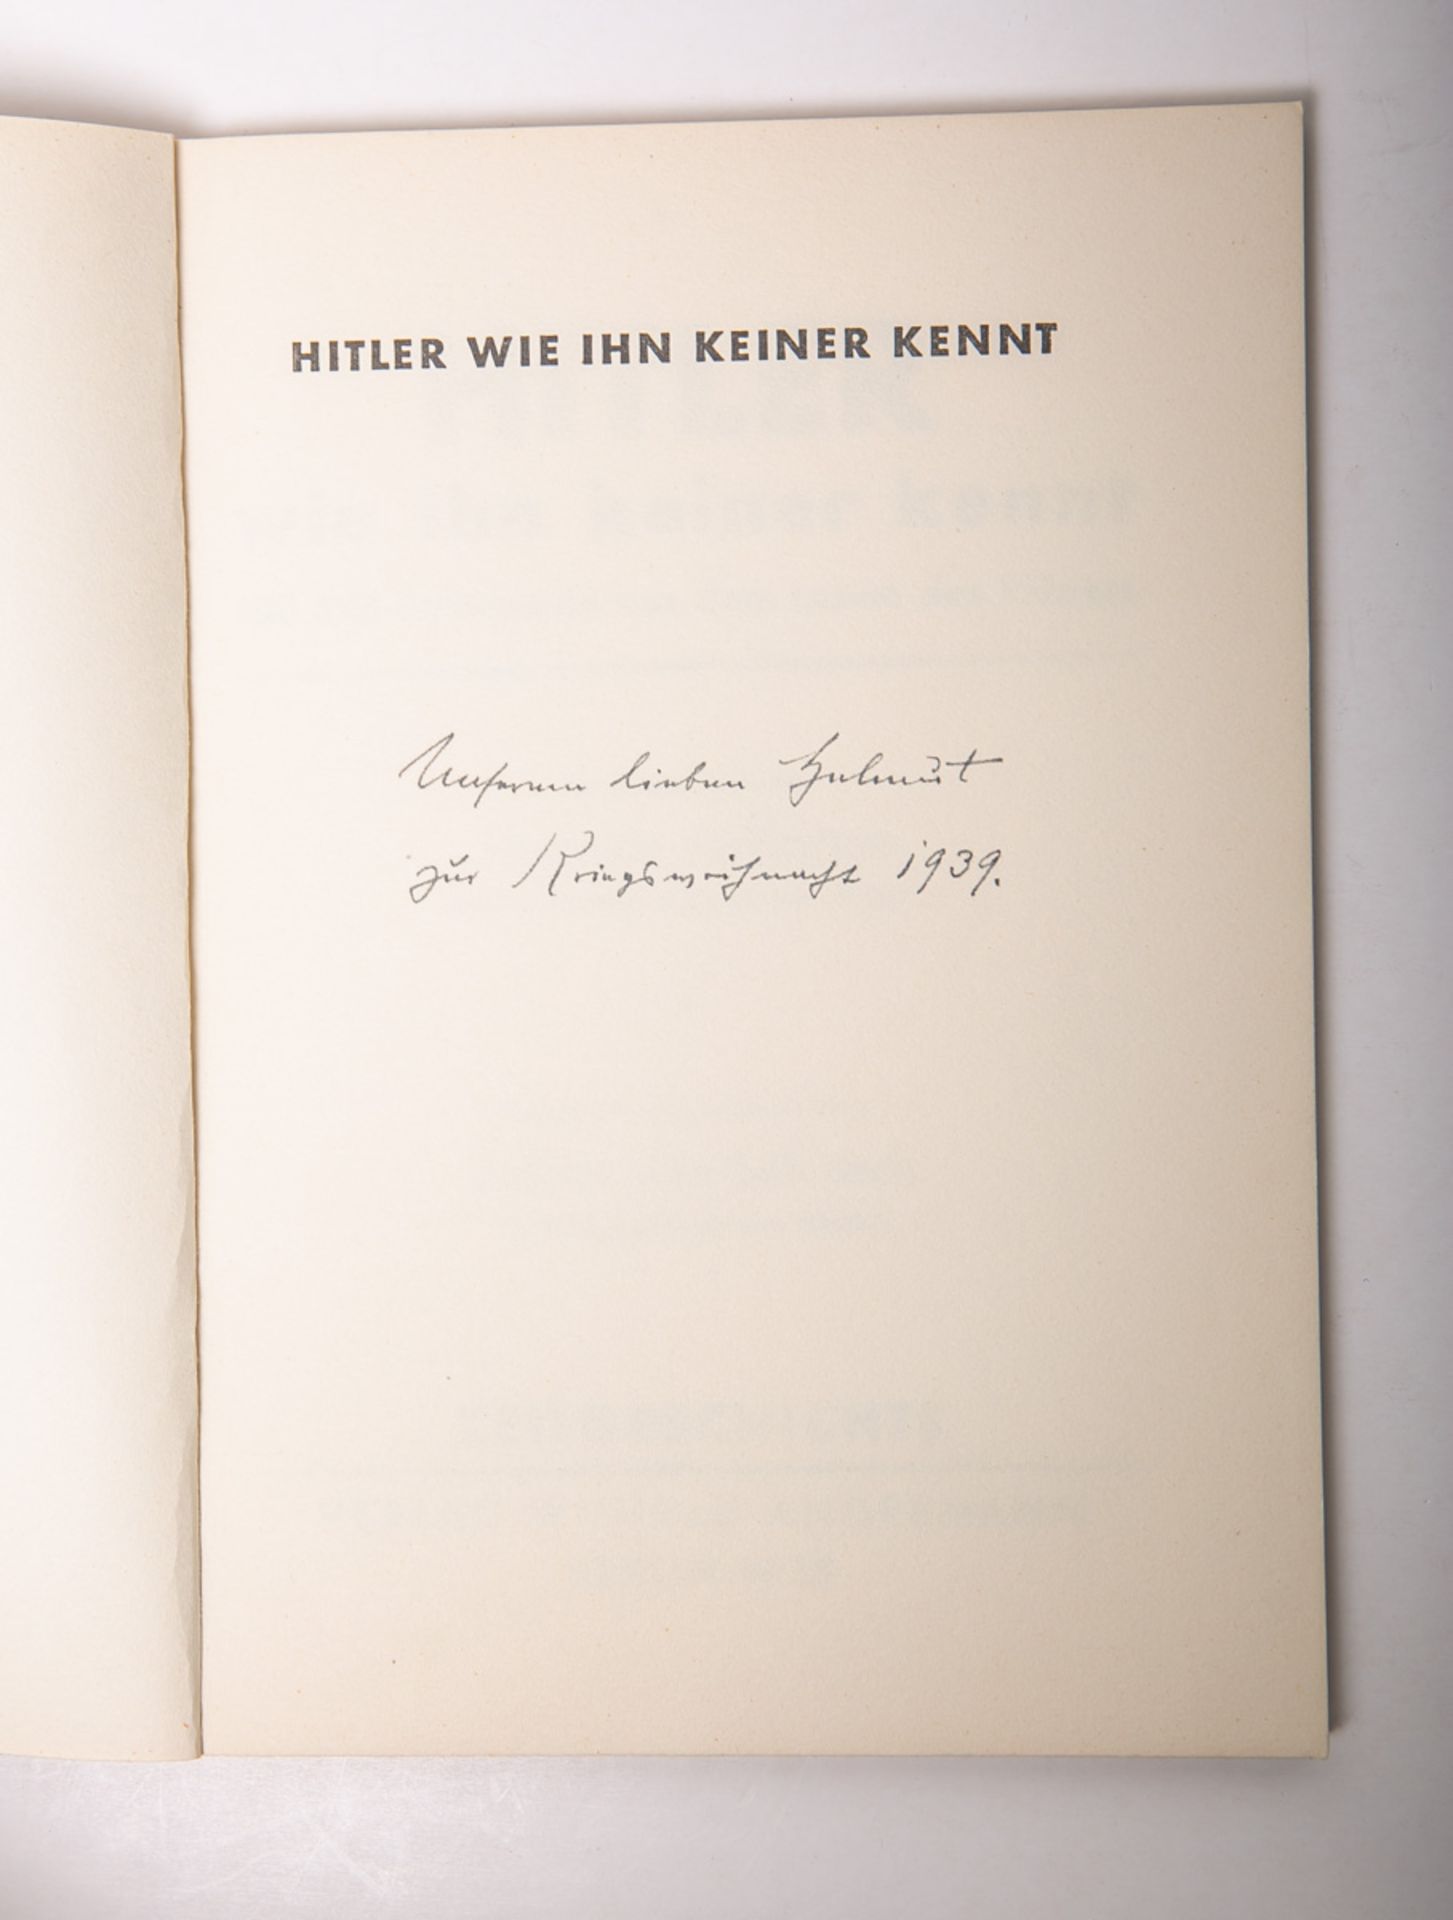 Hoffmann, Heinrich (Hrsg.), "Hitler wie ihn keiner kennt"